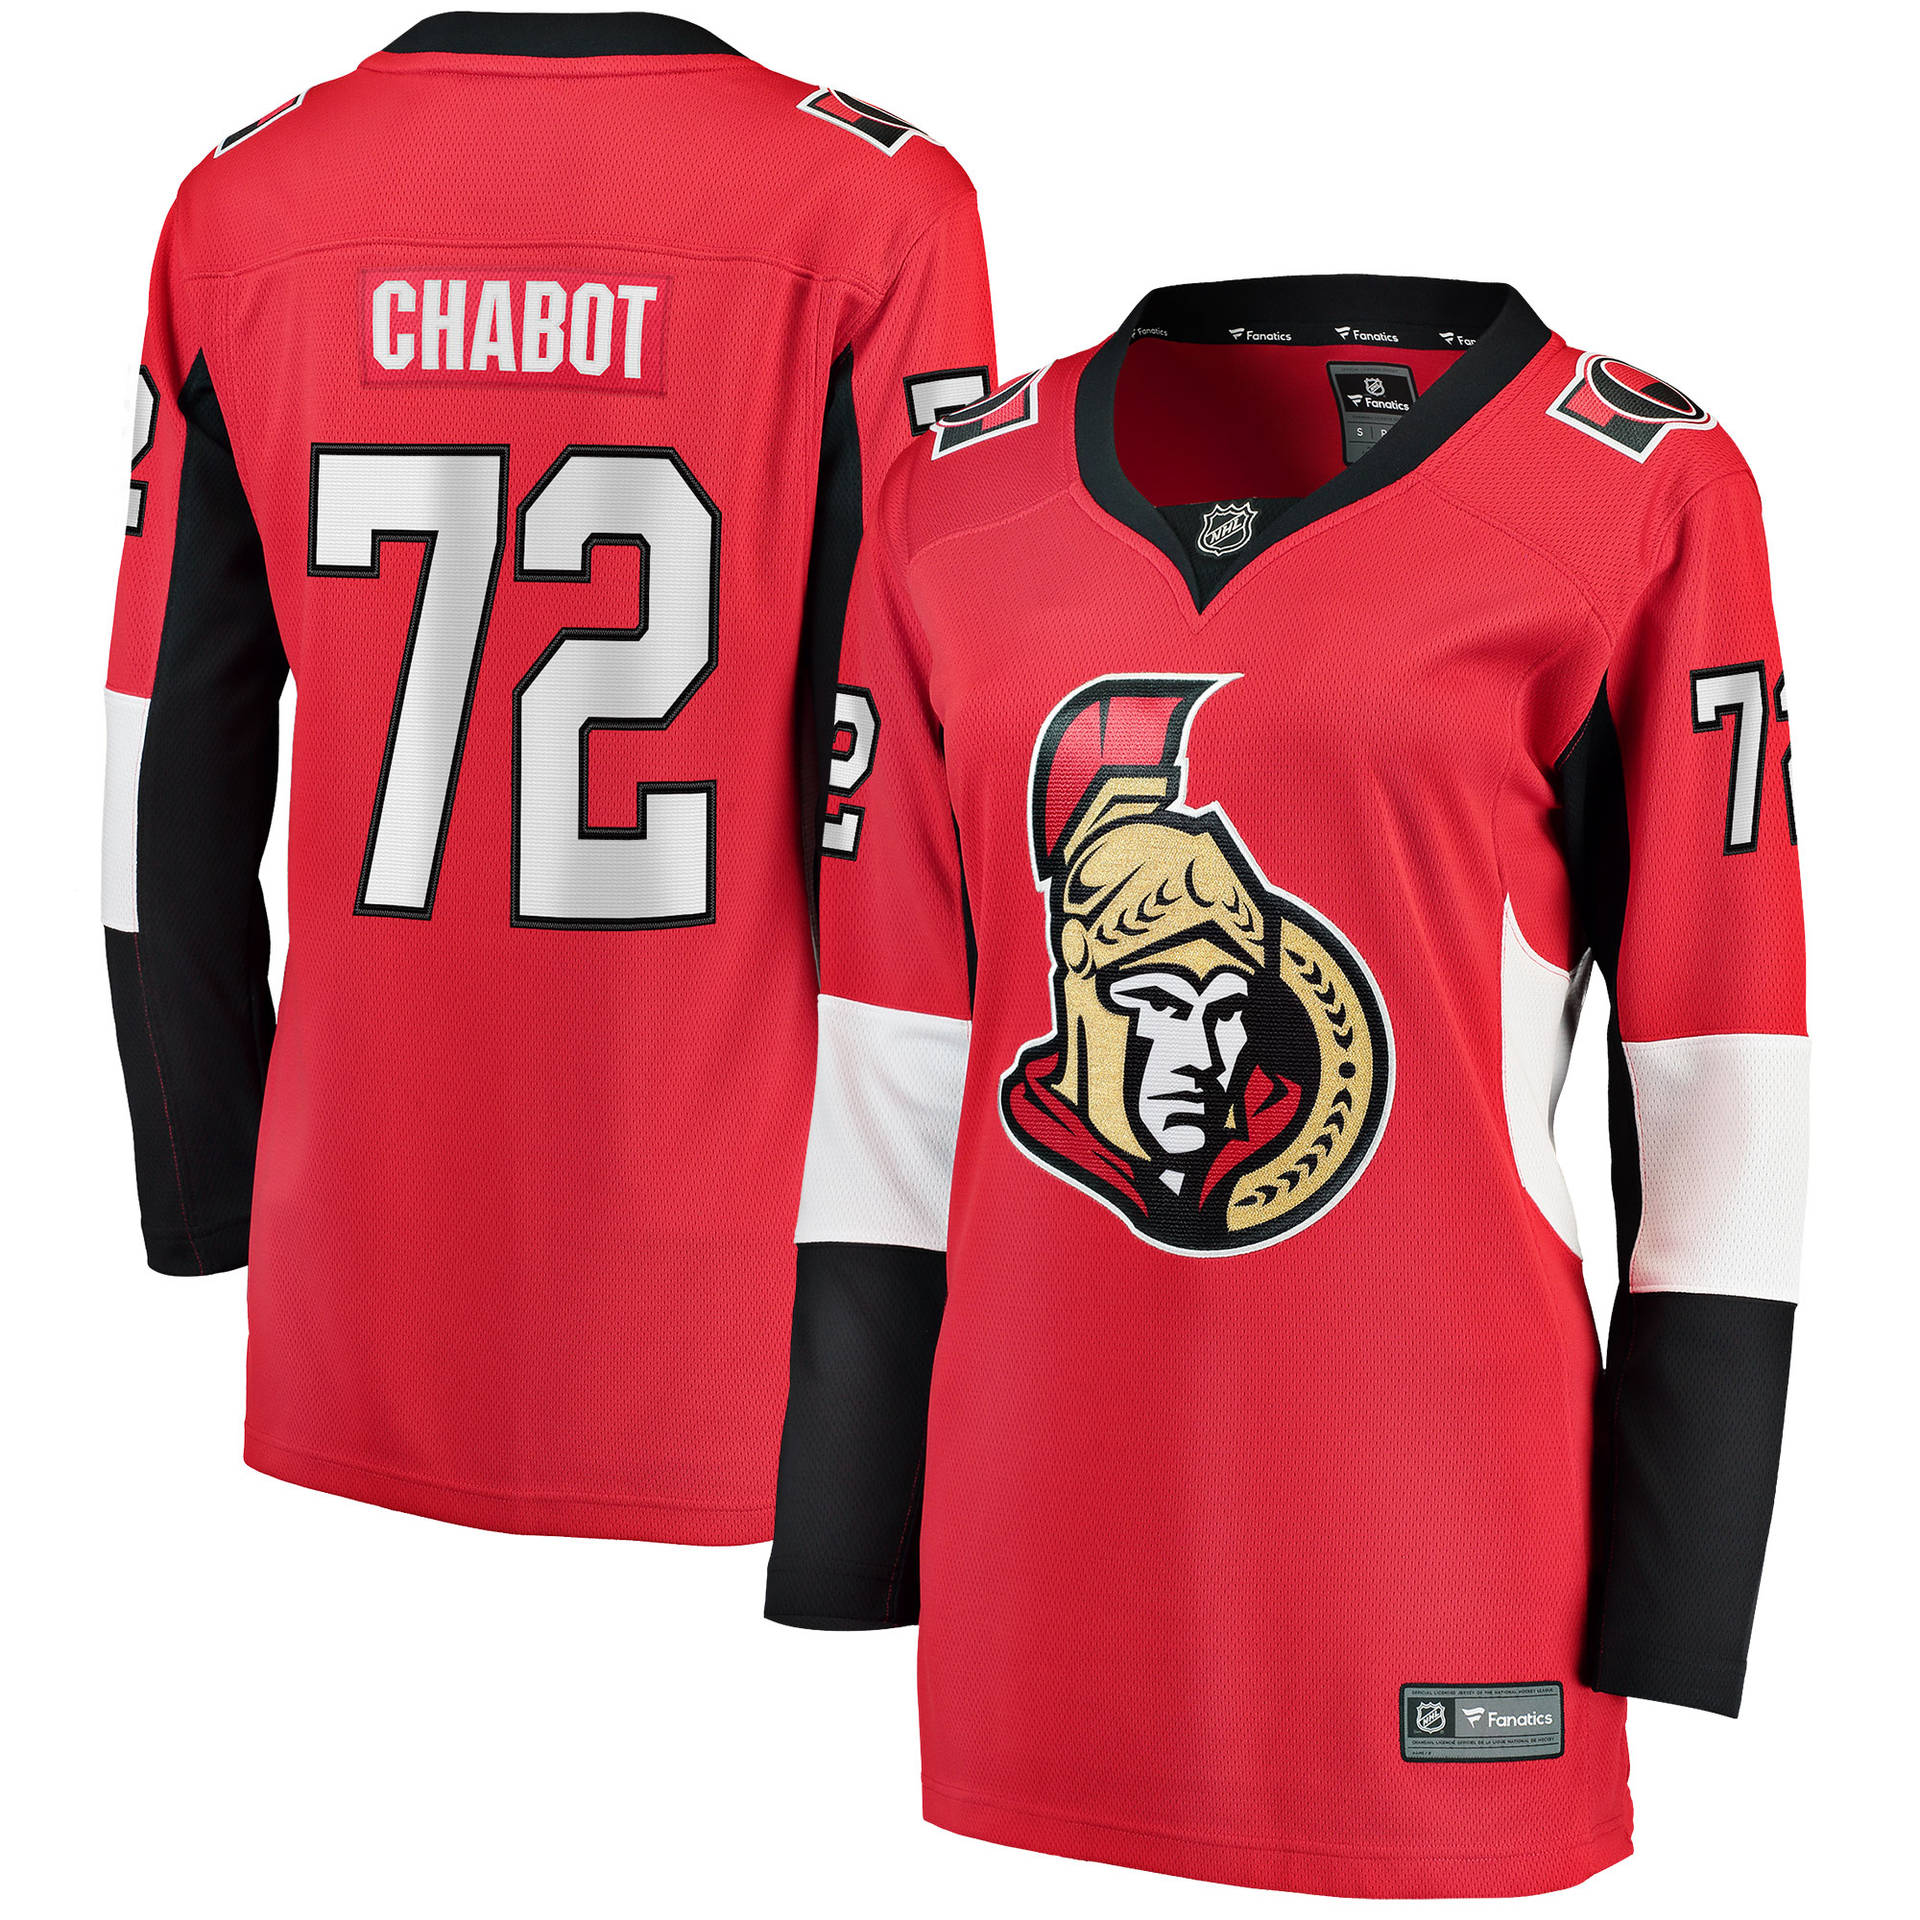 Thomaschabot, La Camiseta De Los Ottawa Senators. Fondo de pantalla